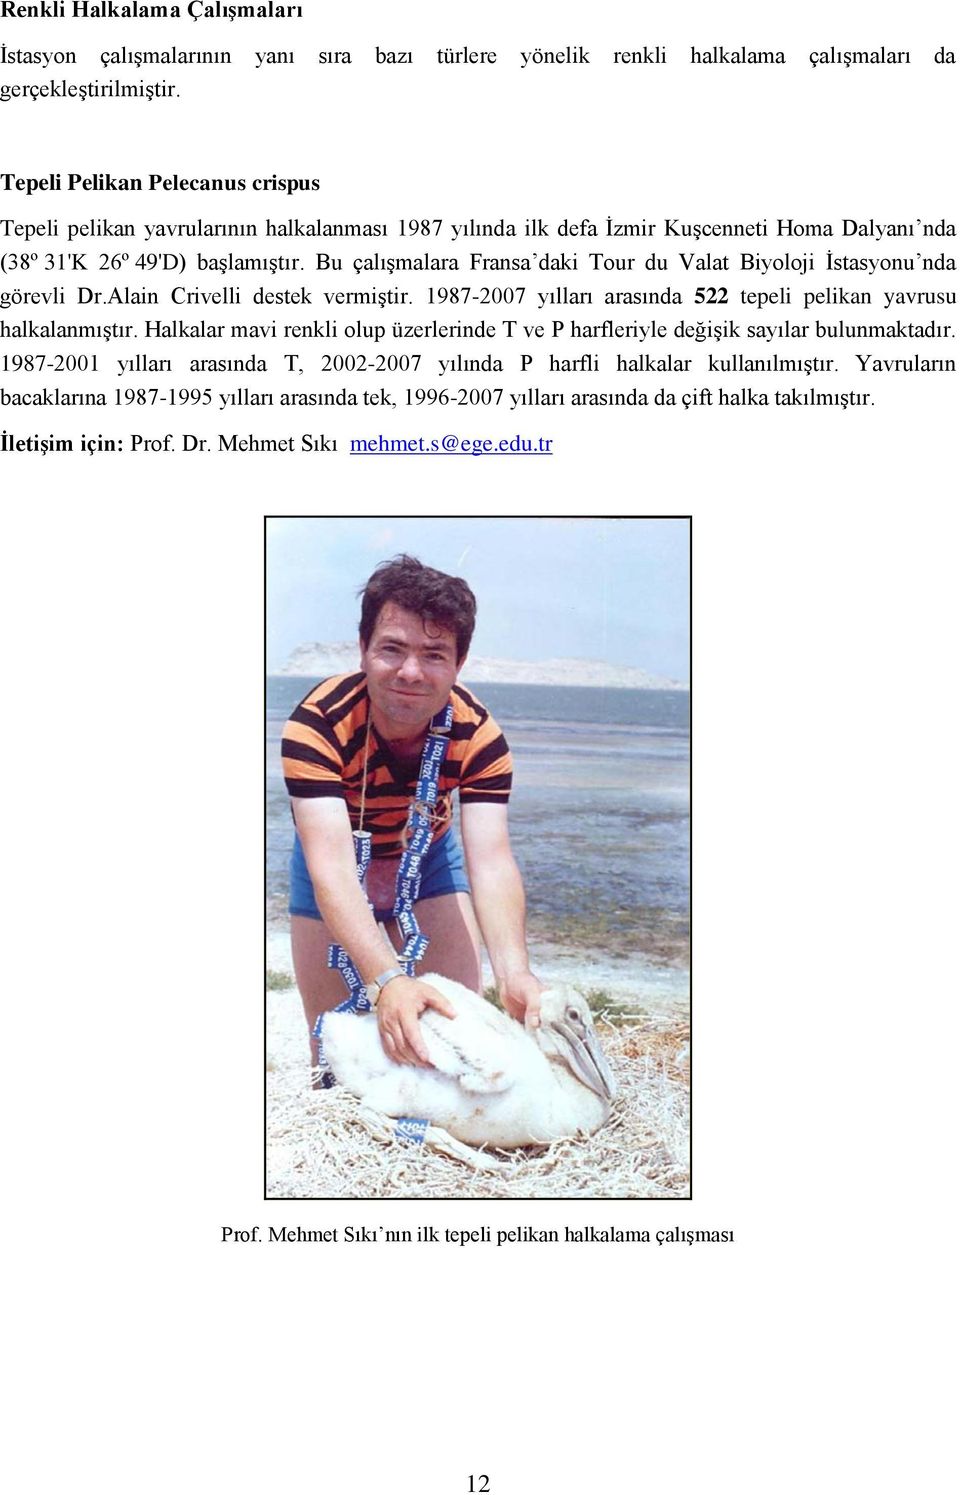 Bu çalışmalara Fransa daki Tour du Valat Biyoloji İstasyonu nda görevli Dr.Alain Crivelli destek vermiştir. 1987-2007 yılları arasında 522 tepeli pelikan yavrusu halkalanmıştır.